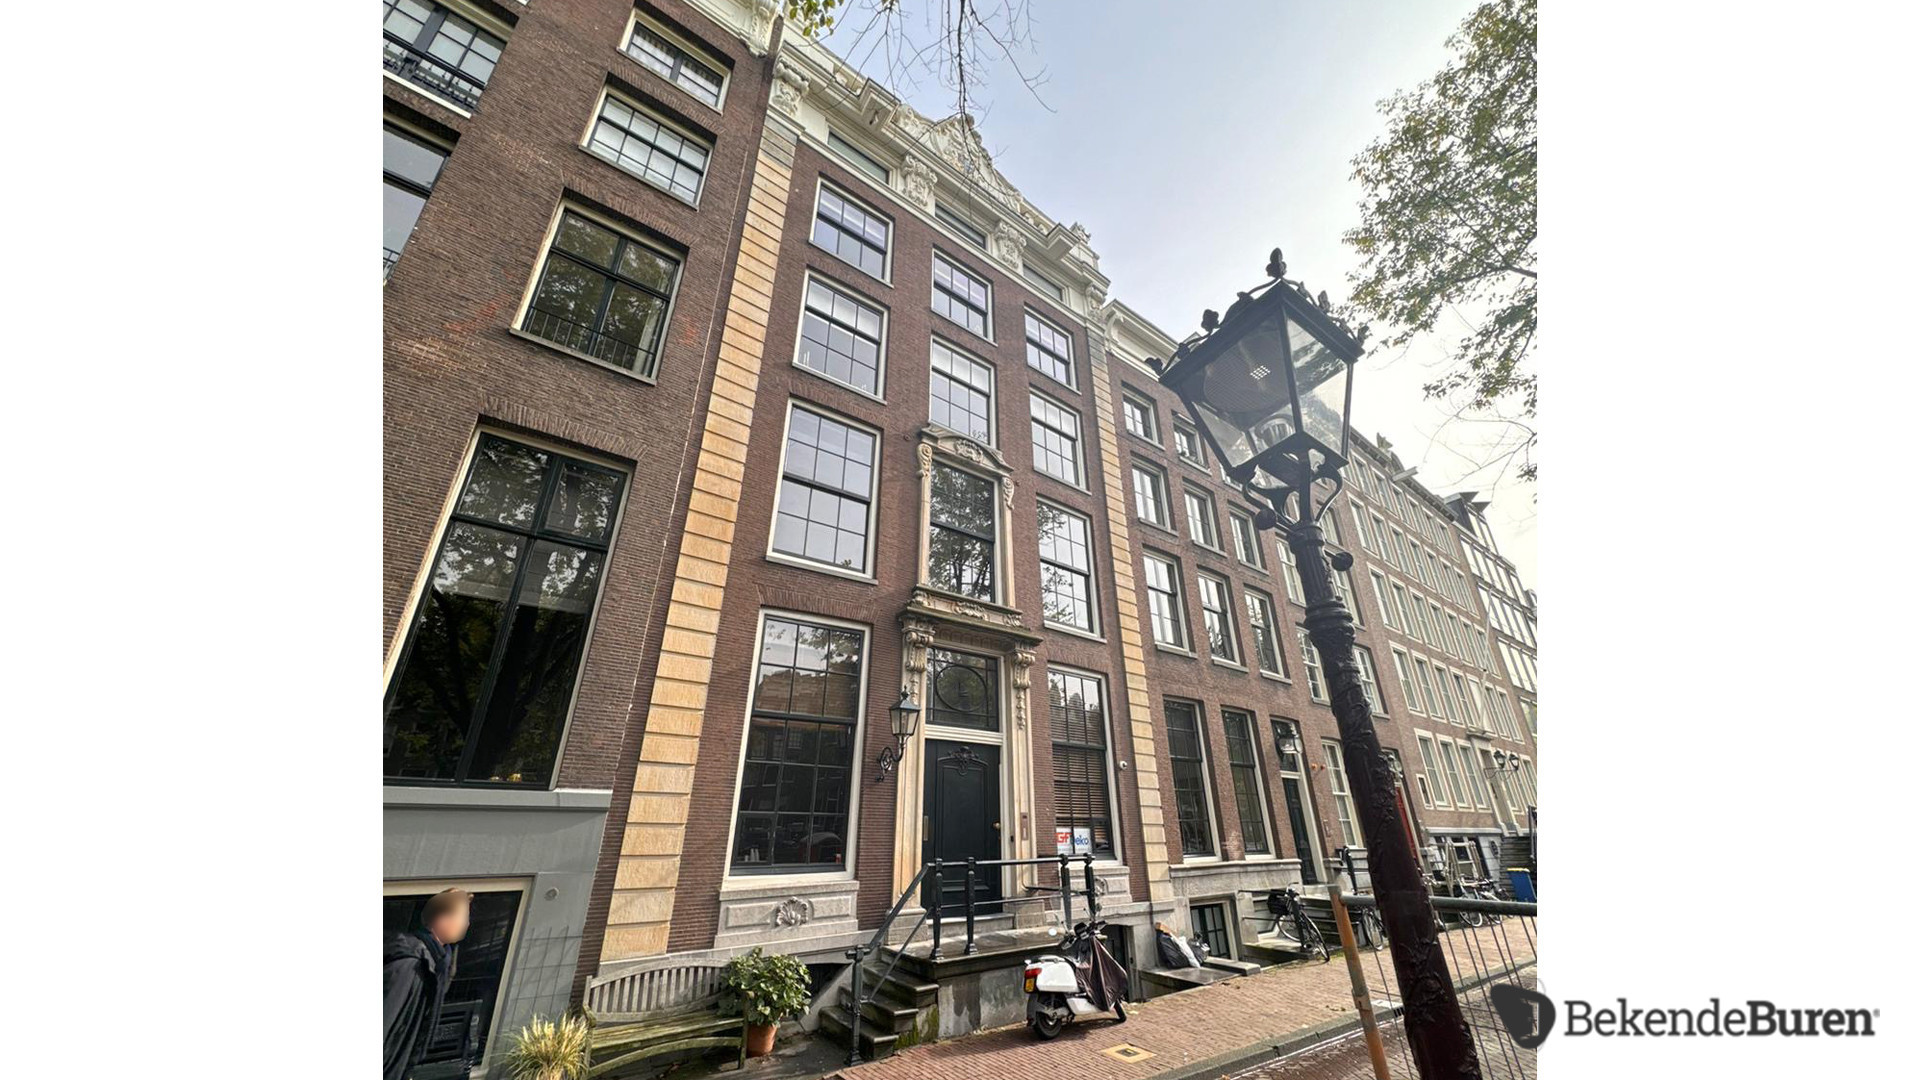 Lieke van Lexmond en Bas van Veggel kopen miljoenenpand aan de Keizersgracht in Amsterdam. Zie foto's 5